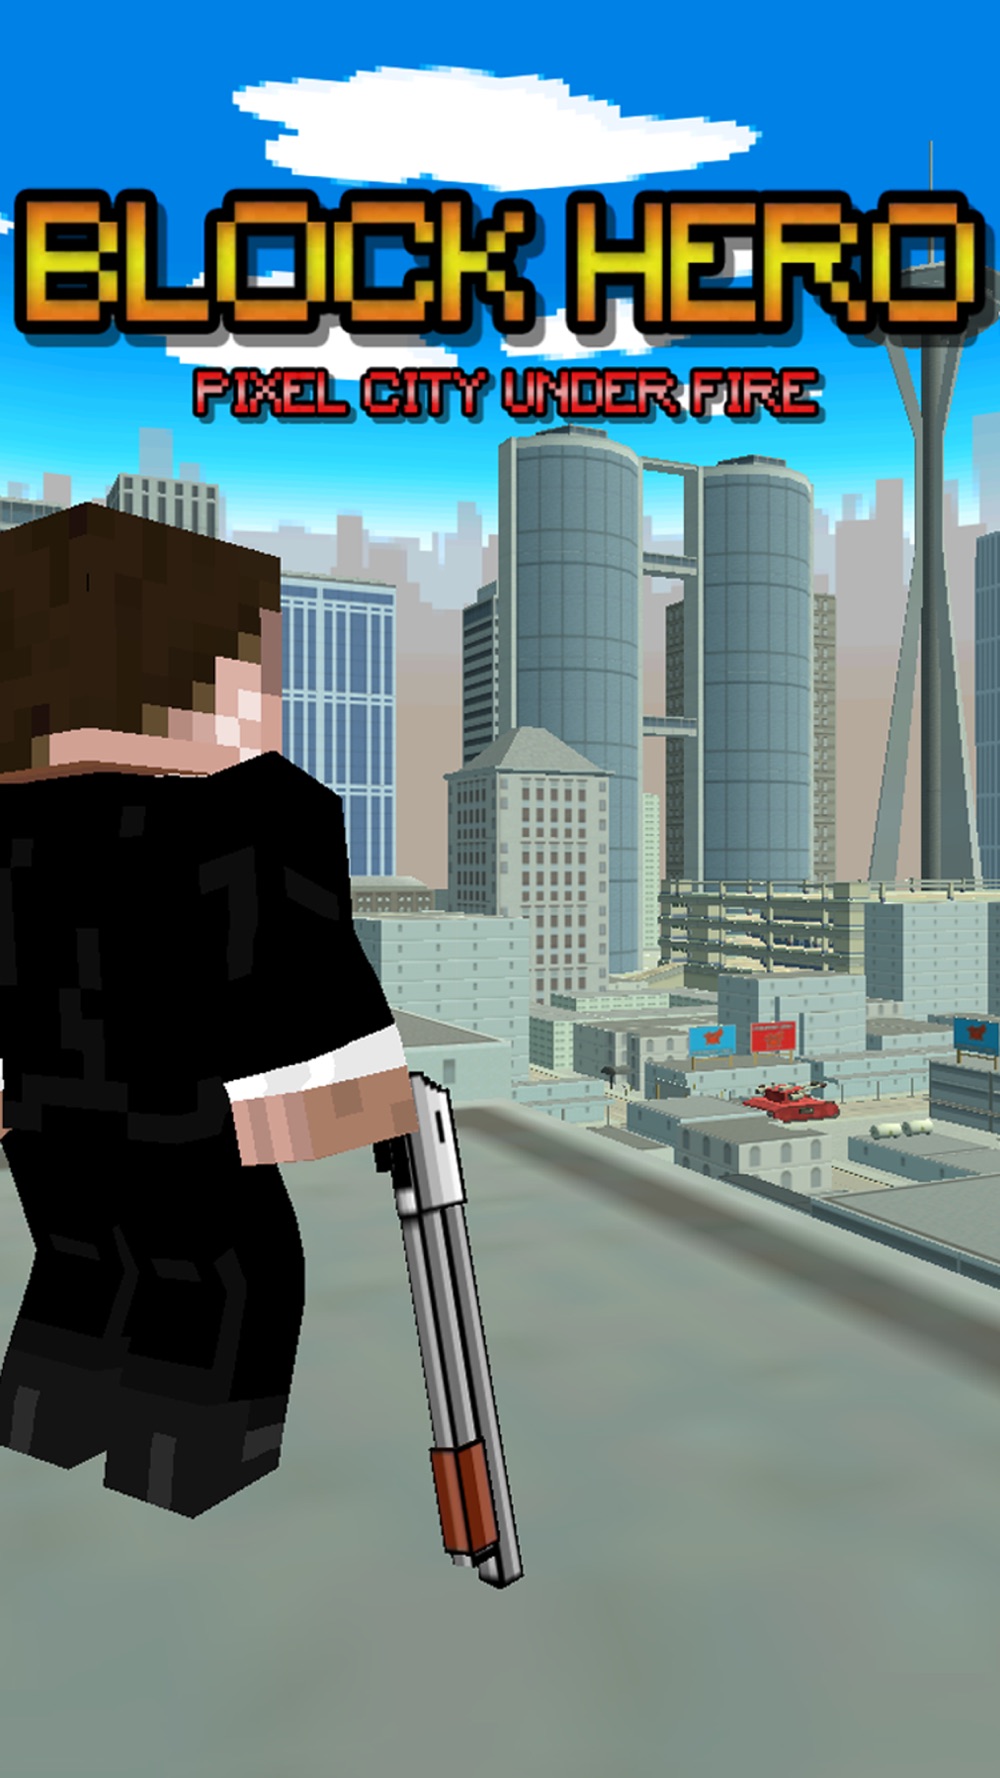 Block Hero – Pixel City Under Fire